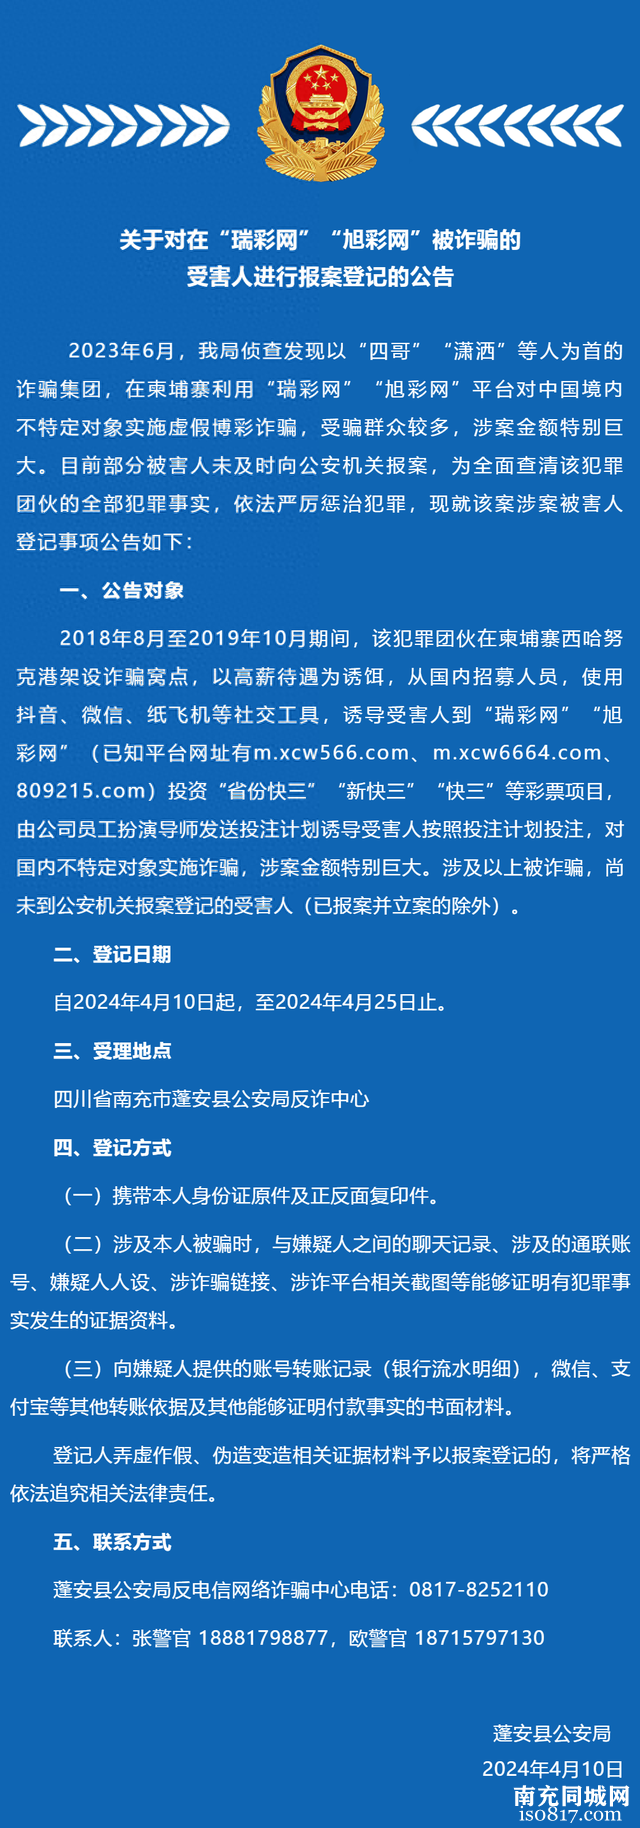 蓬安县公安局关于对在“瑞彩网”“旭彩网”被诈骗的受害人进行报案登记的公告-1.jpg